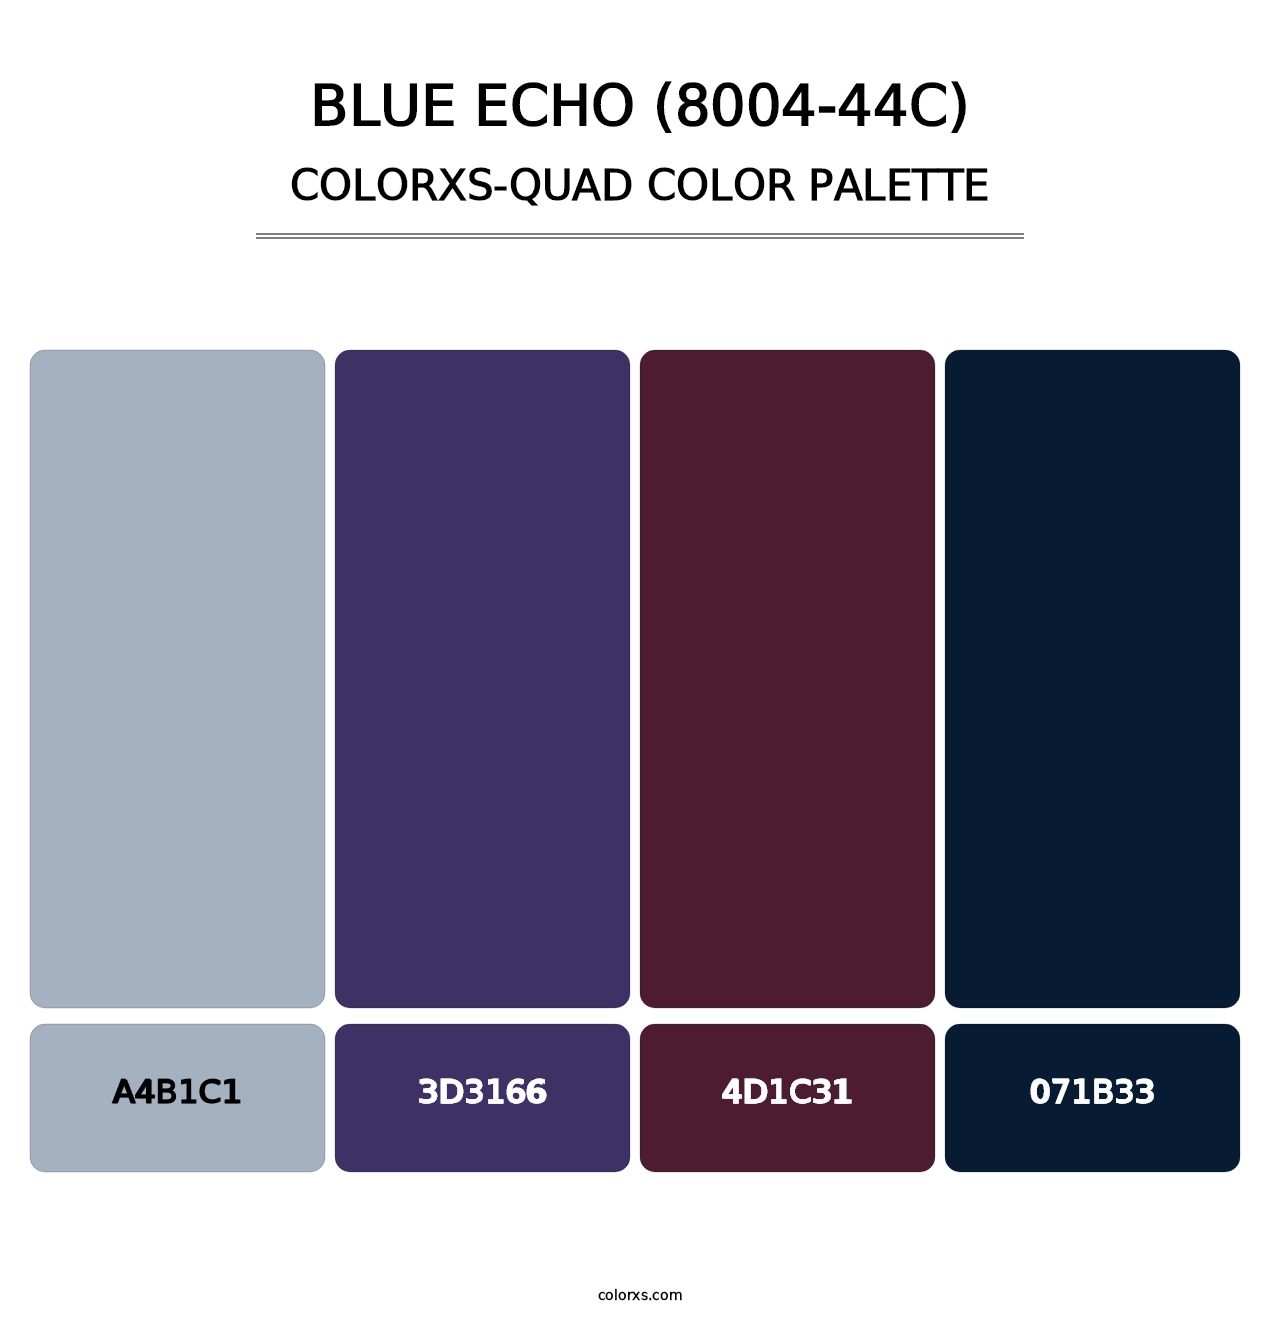 Blue Echo (8004-44C) - Colorxs Quad Palette